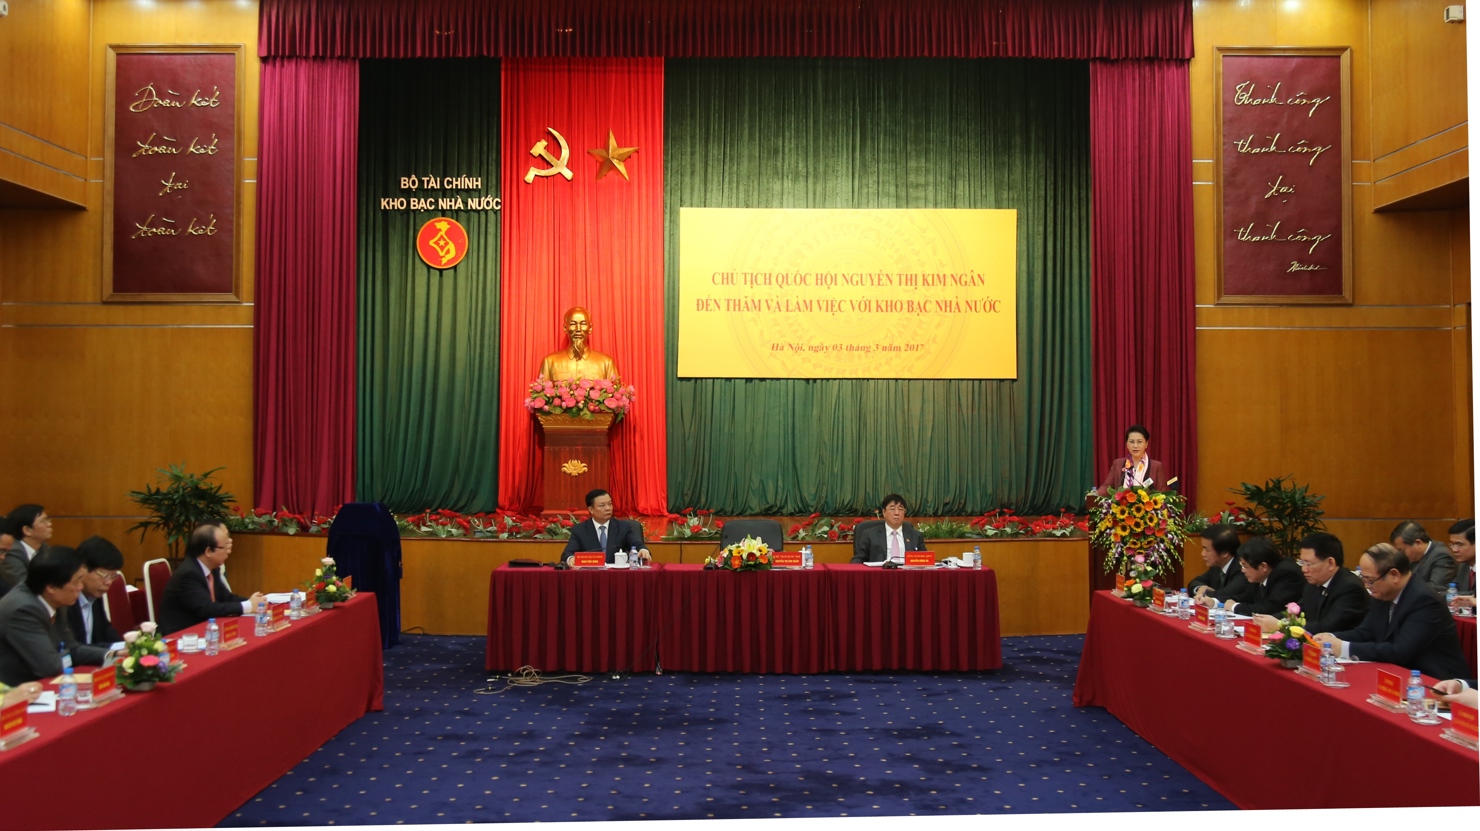 Chủ tịch Quốc hội Nguyễn Thị Kim Ngân phát biểu chỉ đạo tại buổi làm việc với hệ thống Kho bạc Nhà nước sáng ngày 3/3/2017. Nguồn: Lục Trường.